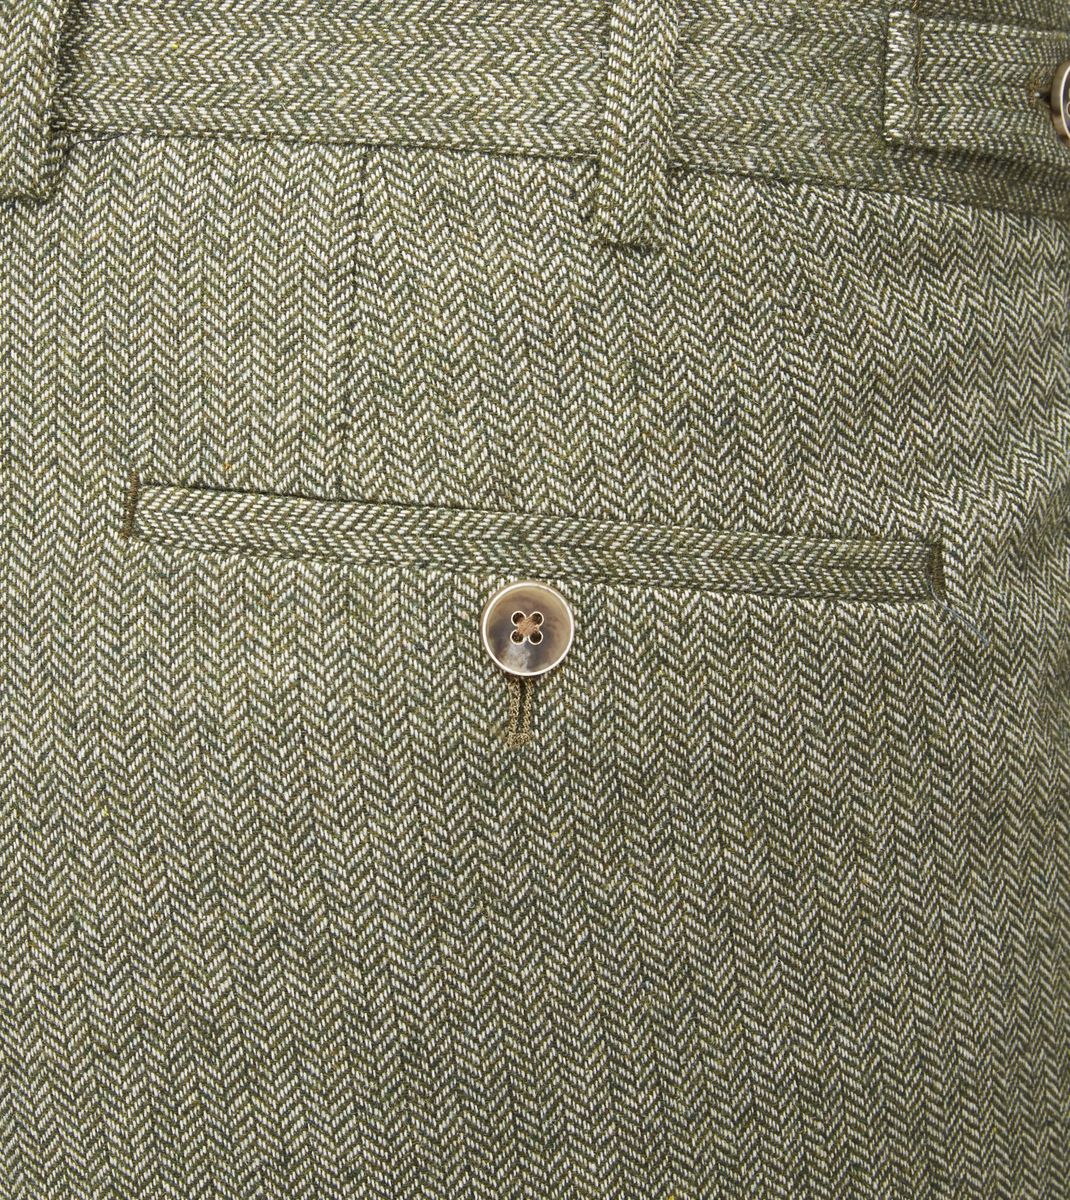 Jude Tweed Suit Jacket - Sage Green – Blooms Menswear